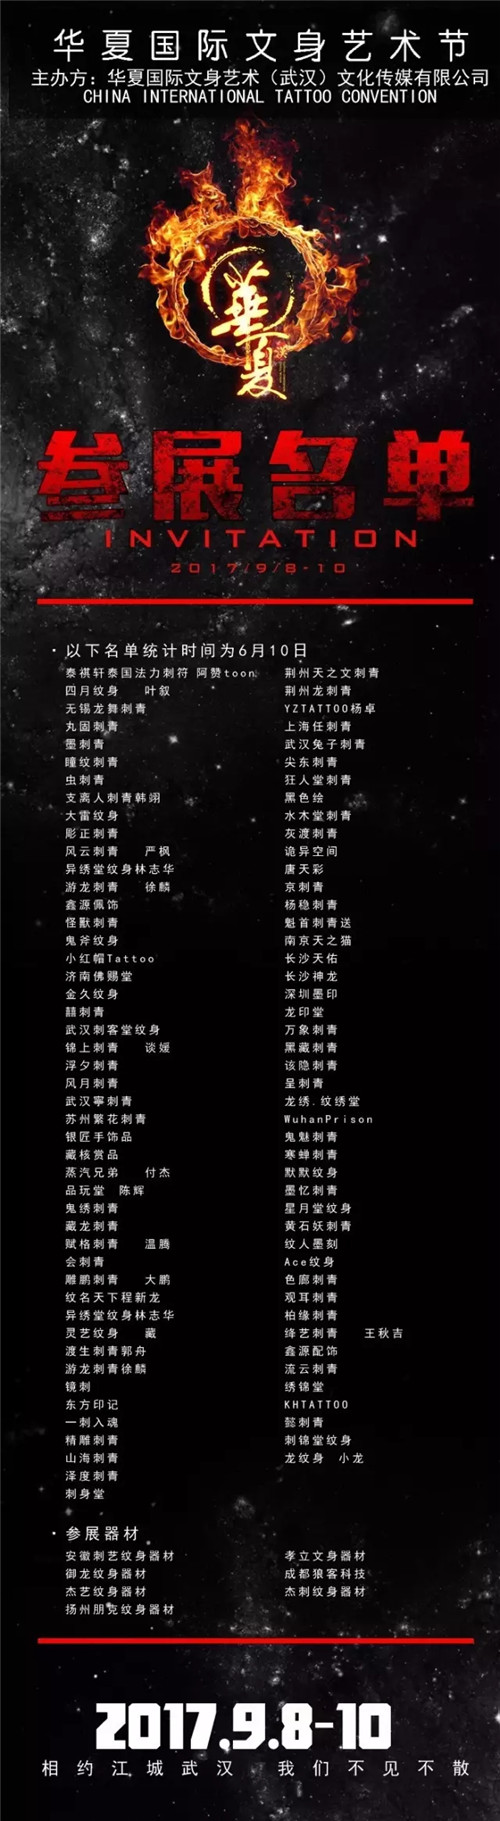 武汉华夏国际文身艺术节总览 场馆布局 产赛名单